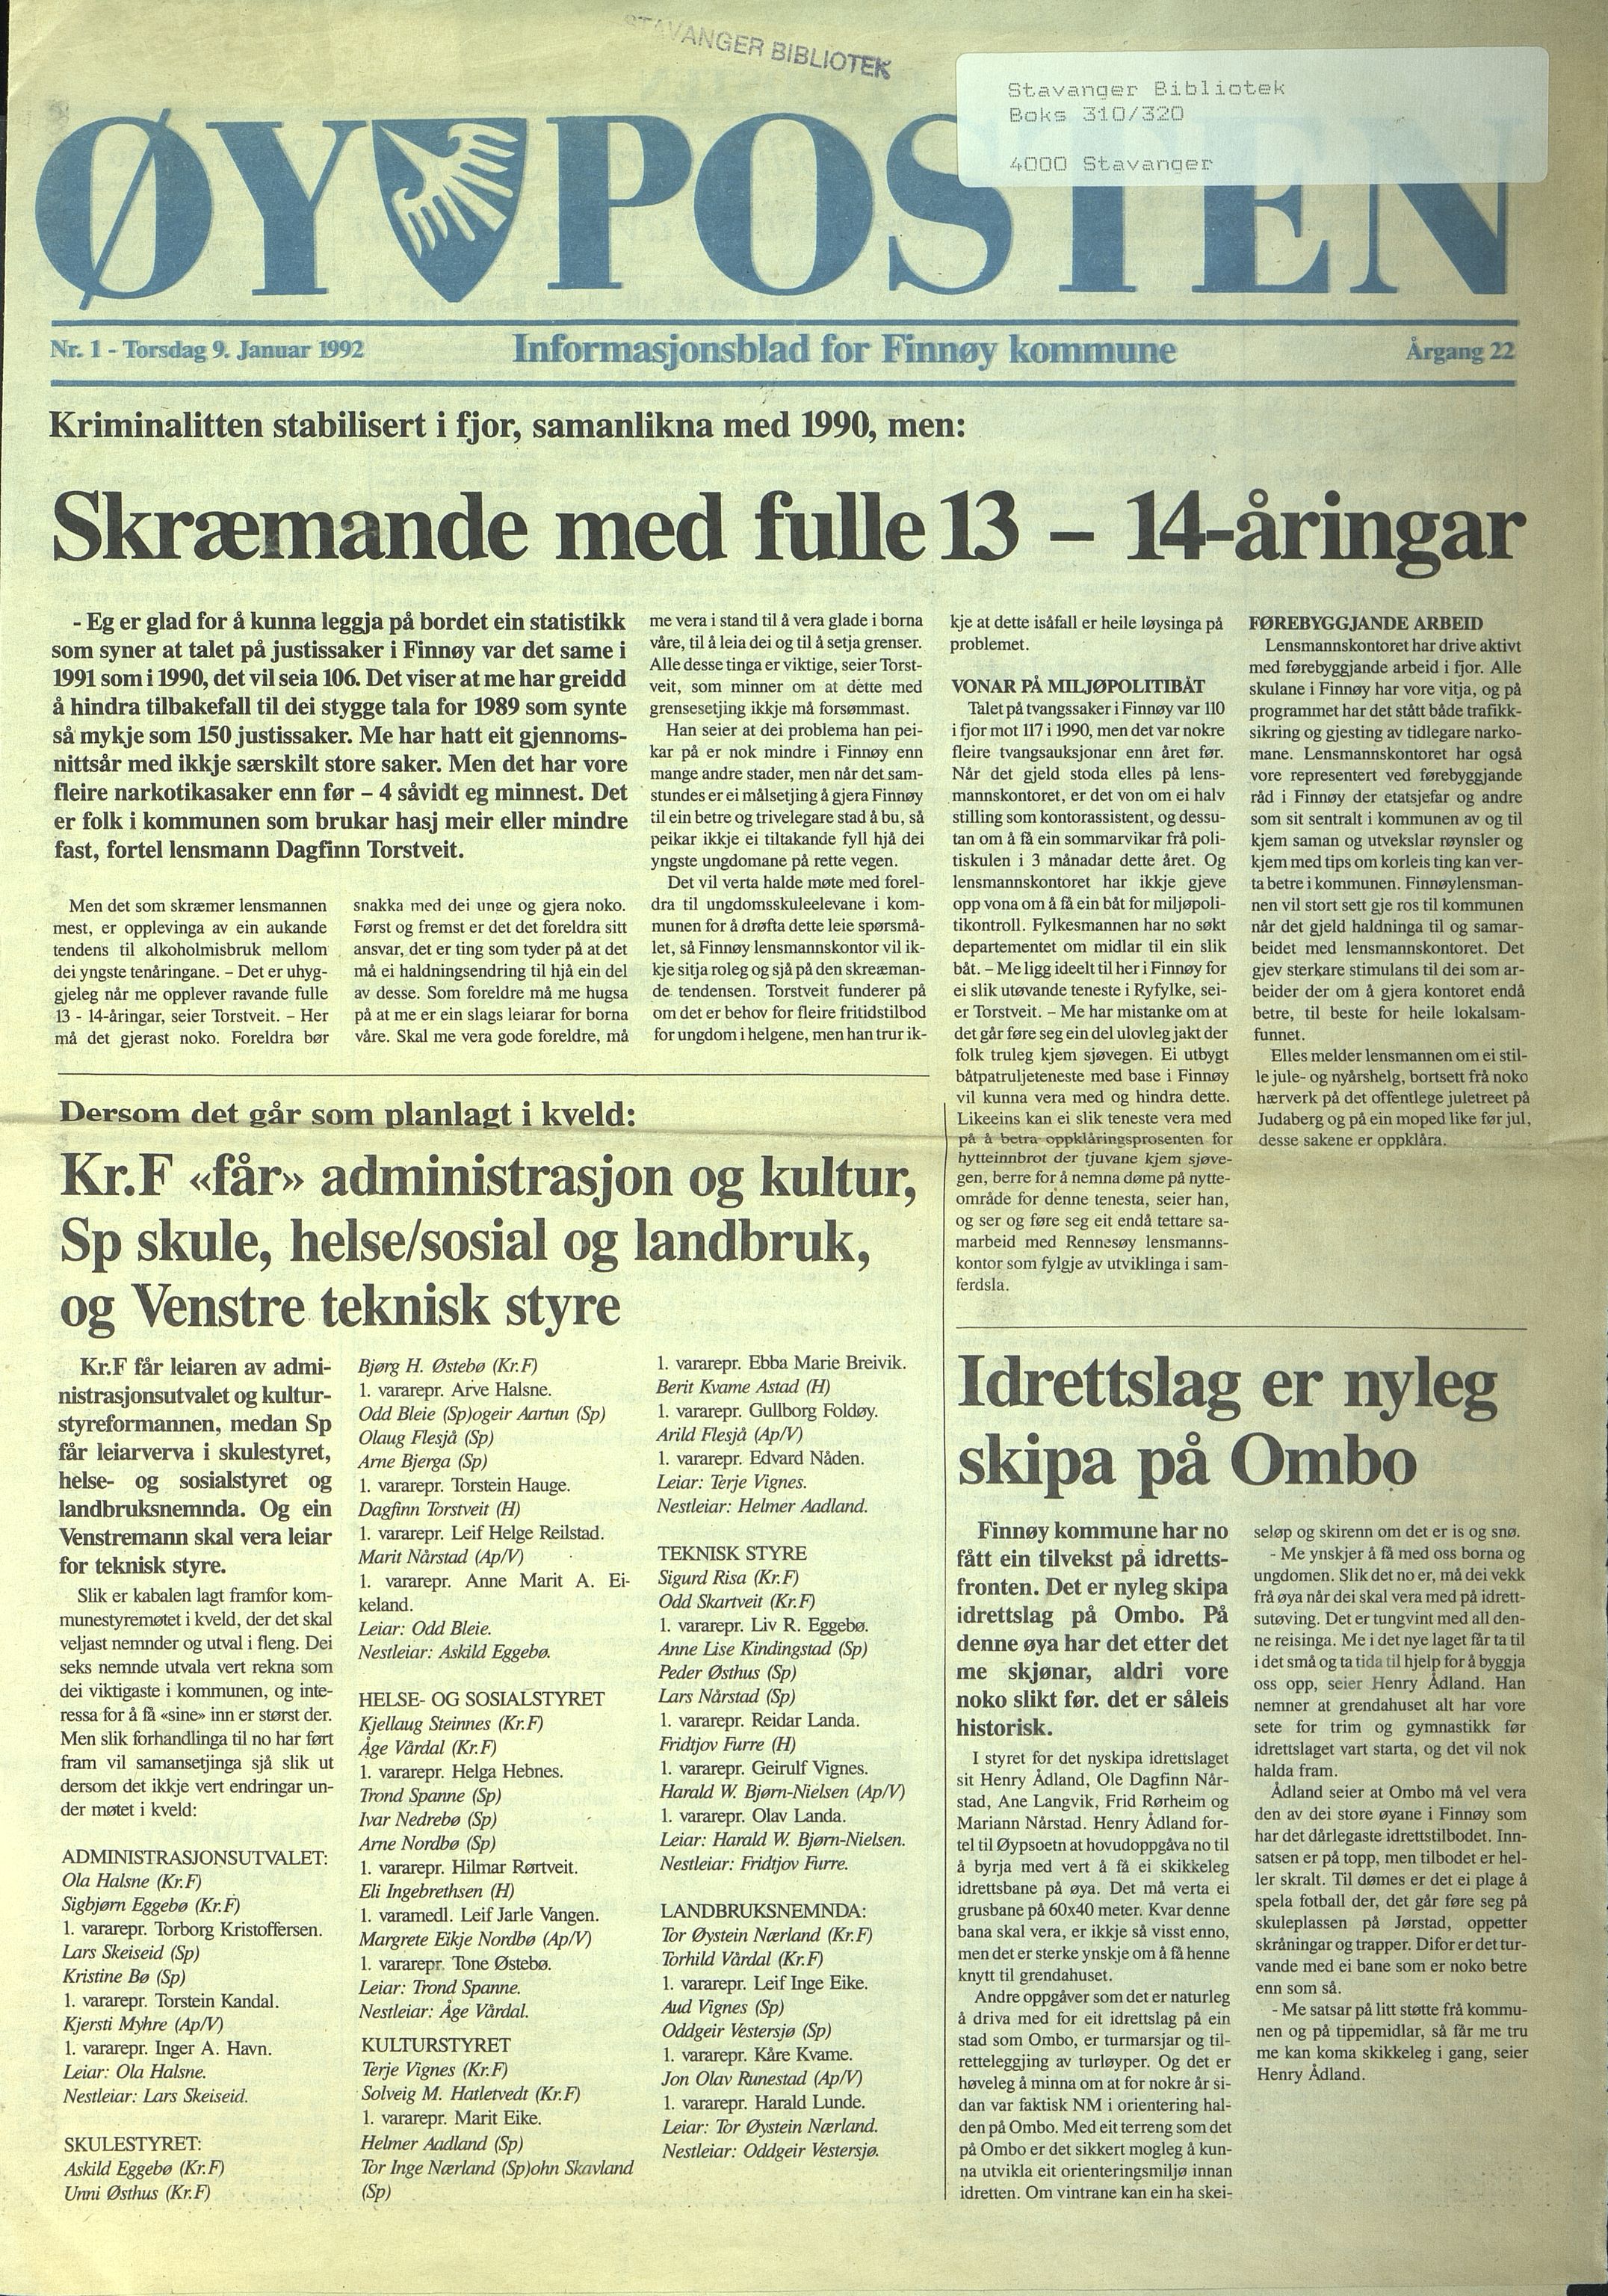 , Finnøy kommune, Øyposten, 1992, 1992